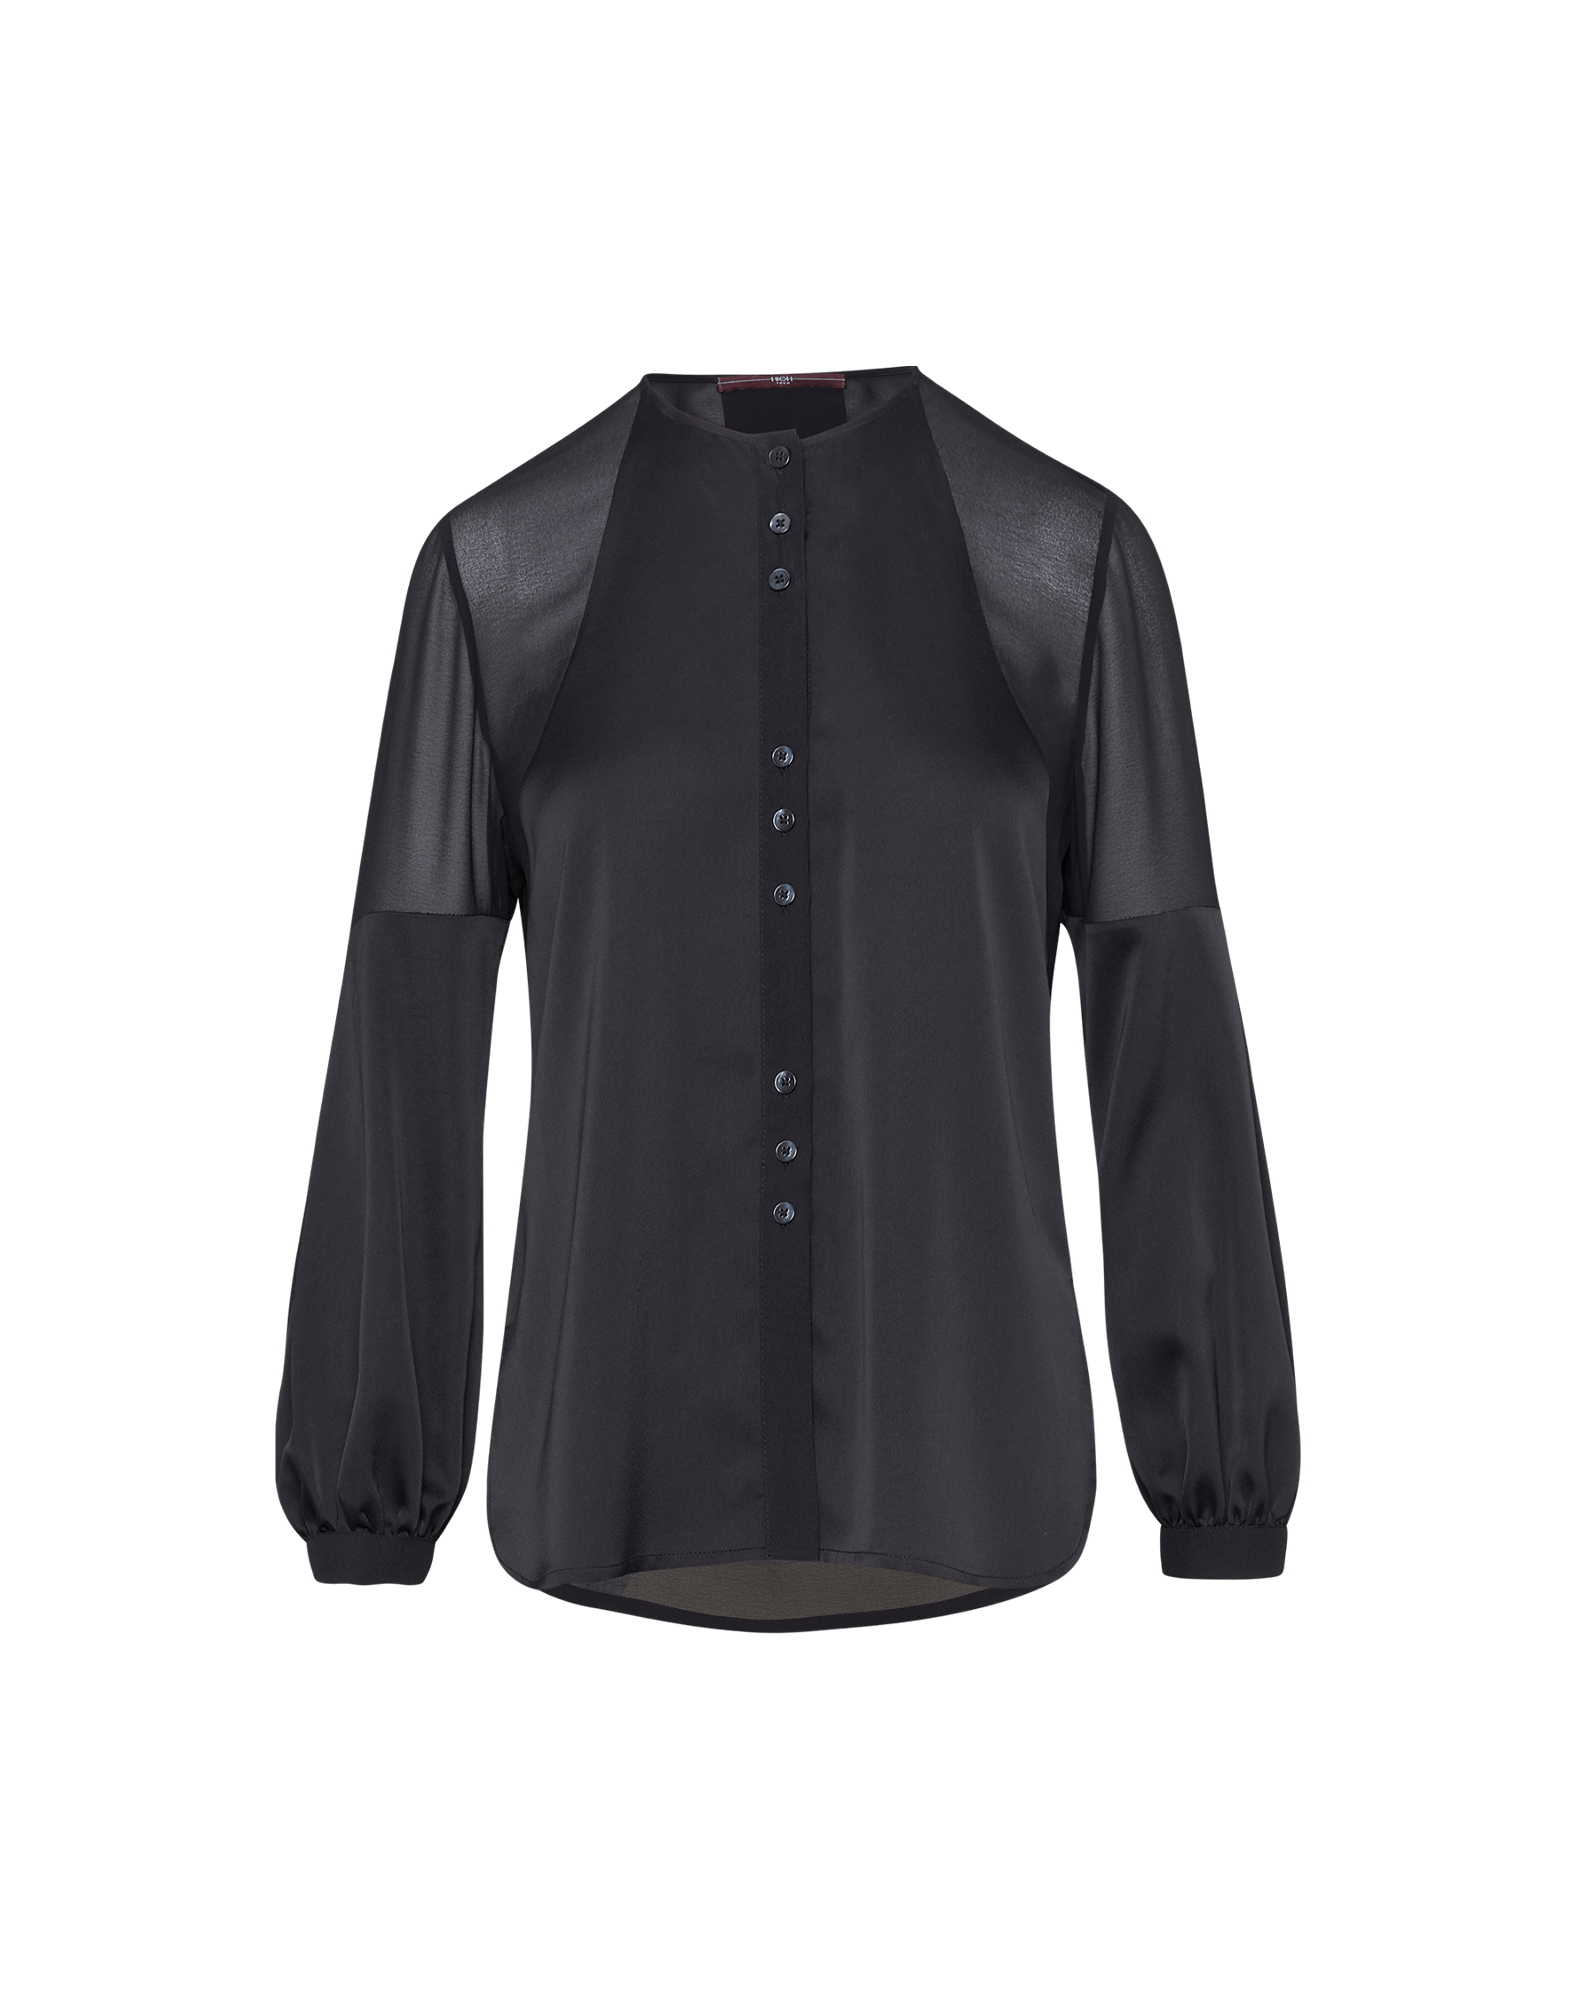 SUPPOSE: Schwarze Bluse transparentem technischem aus Satin Crêpe und